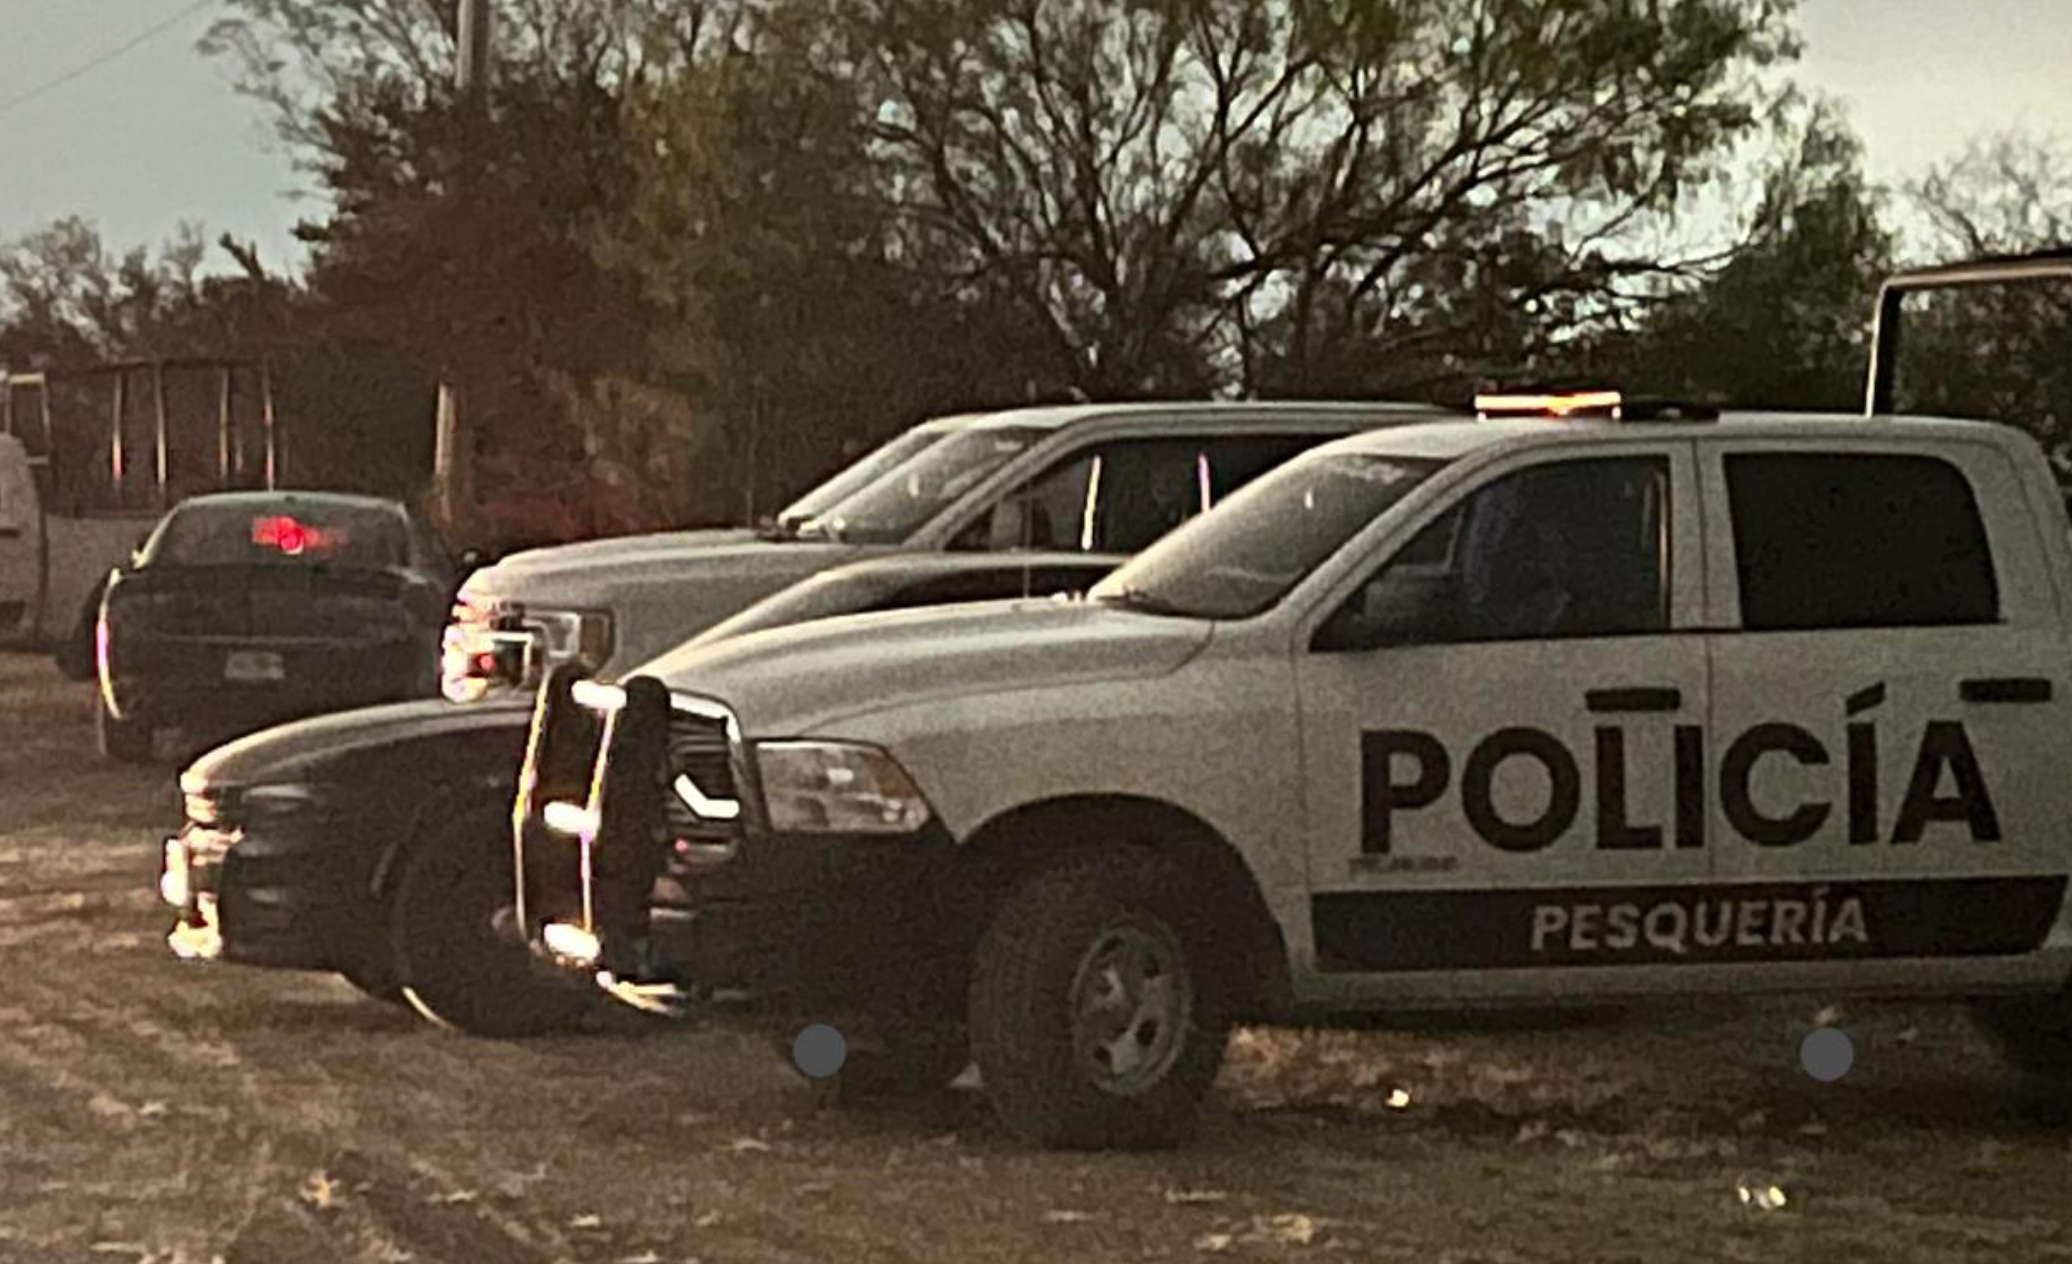 Encuentran al menos 10 cuerpos calcinados en Pesquería, Nuevo León 